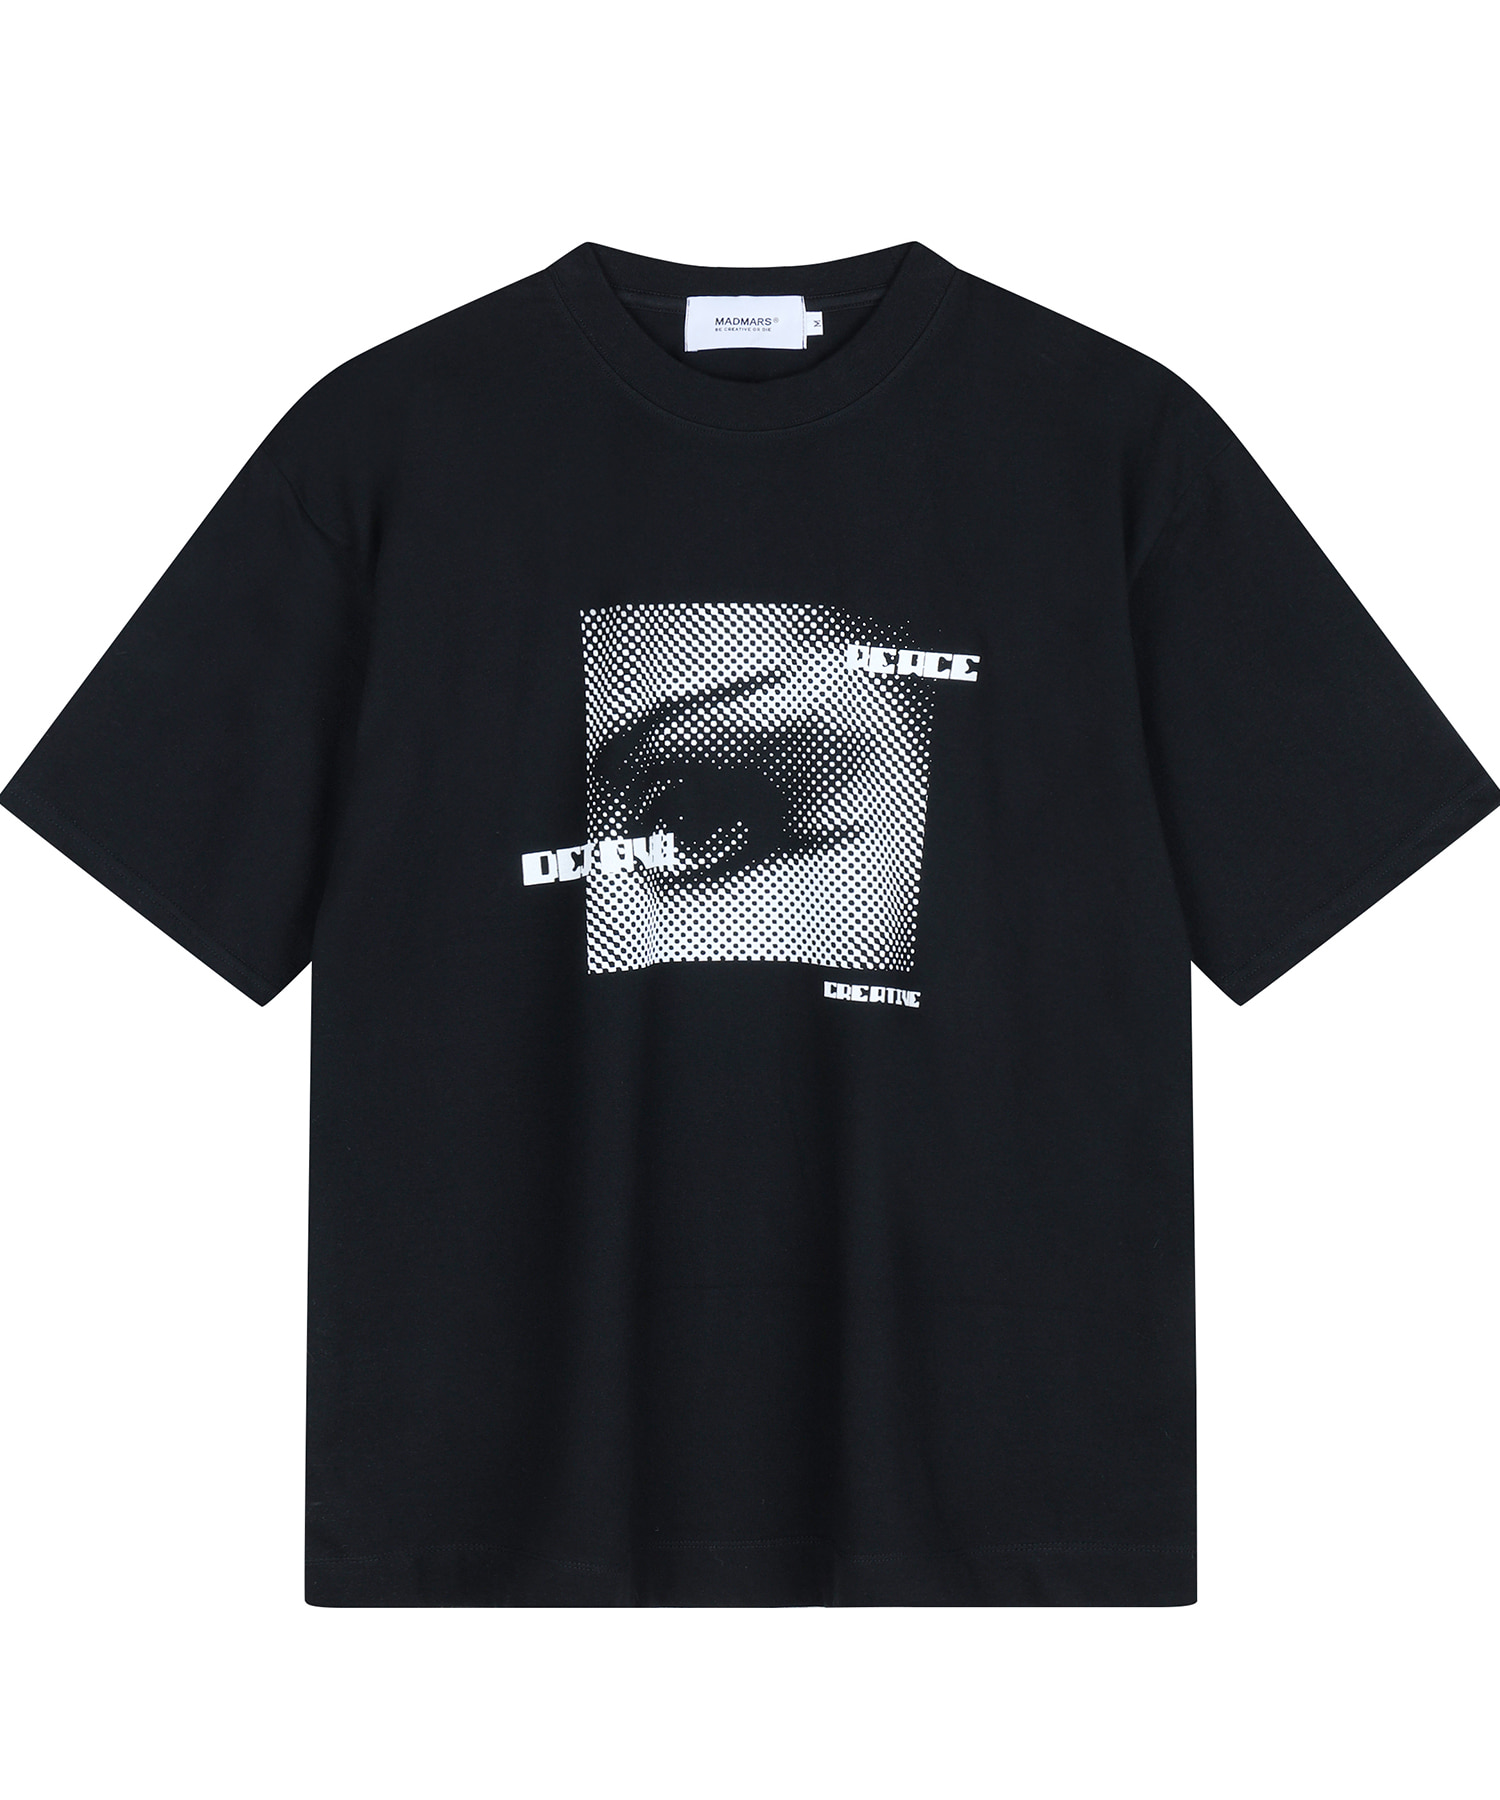 eyes T-shirt black